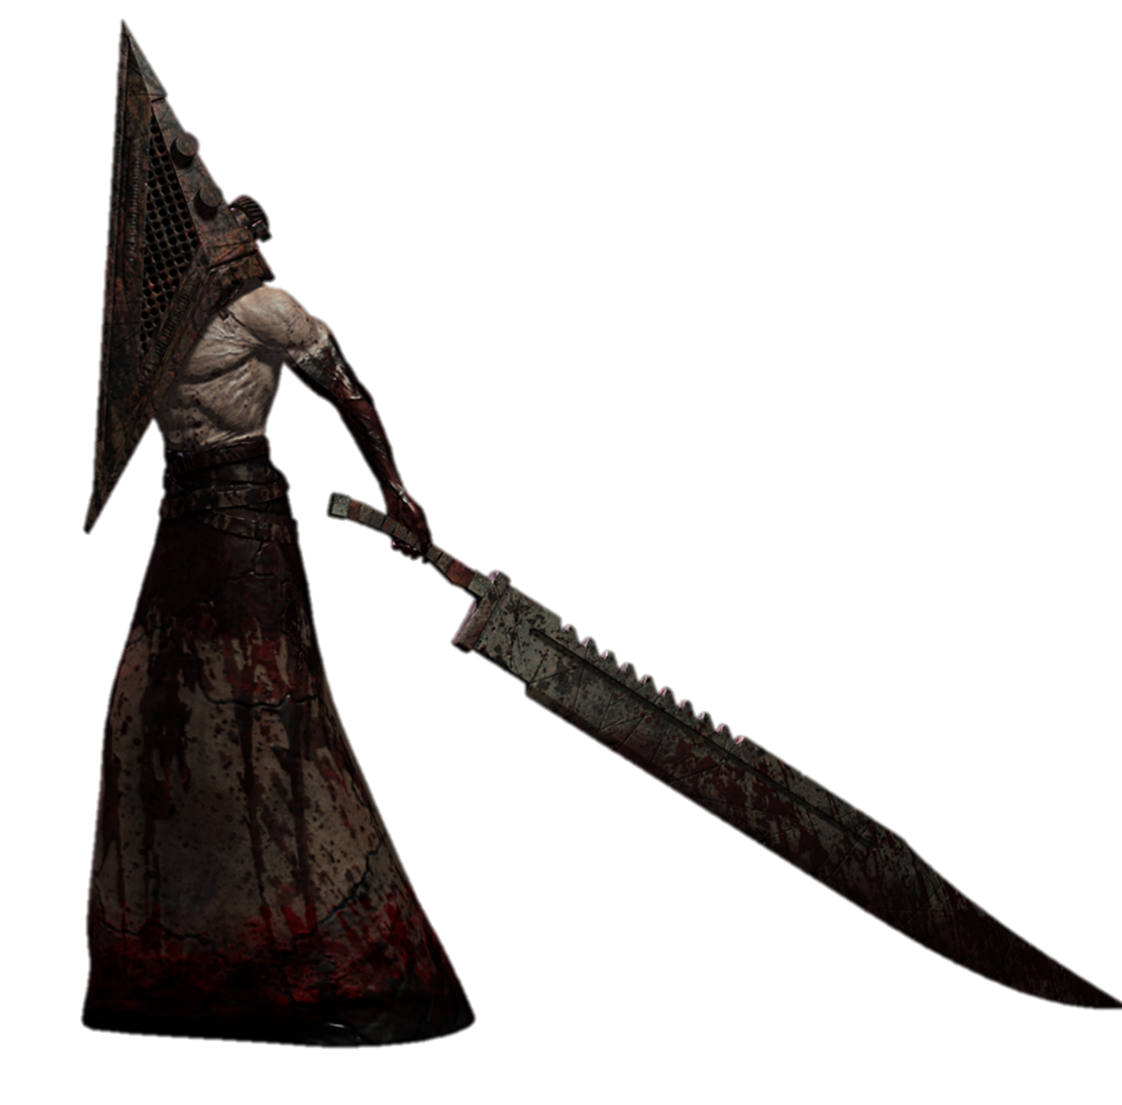 Silent Hill on Tumblr: My pyramid head tattoo :)